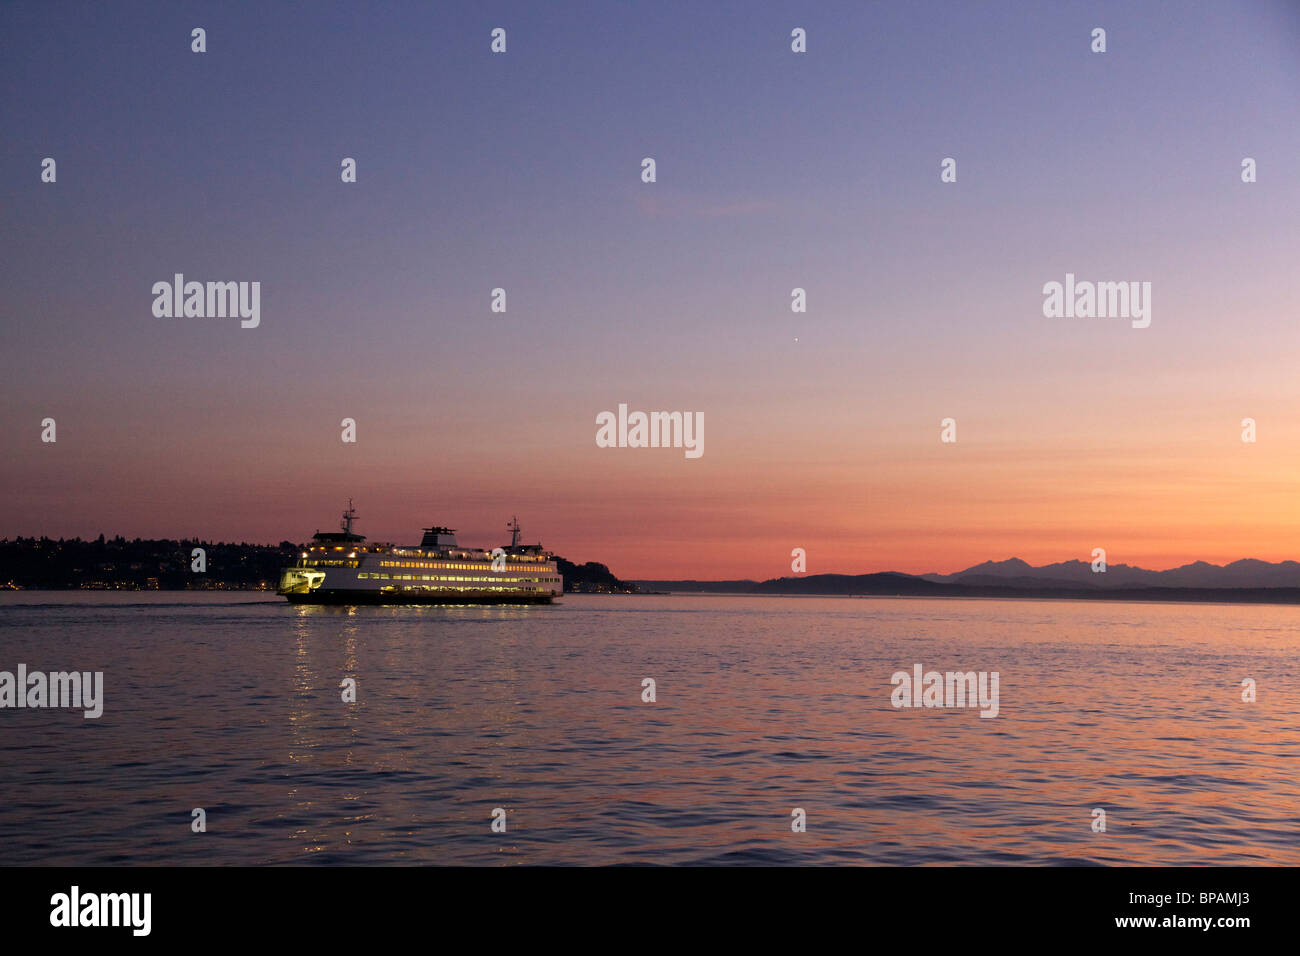 Washington State Ferry segeln von Seattle in der Dämmerung. Hellen Punkt im Himmel ist die Venus. Stockfoto